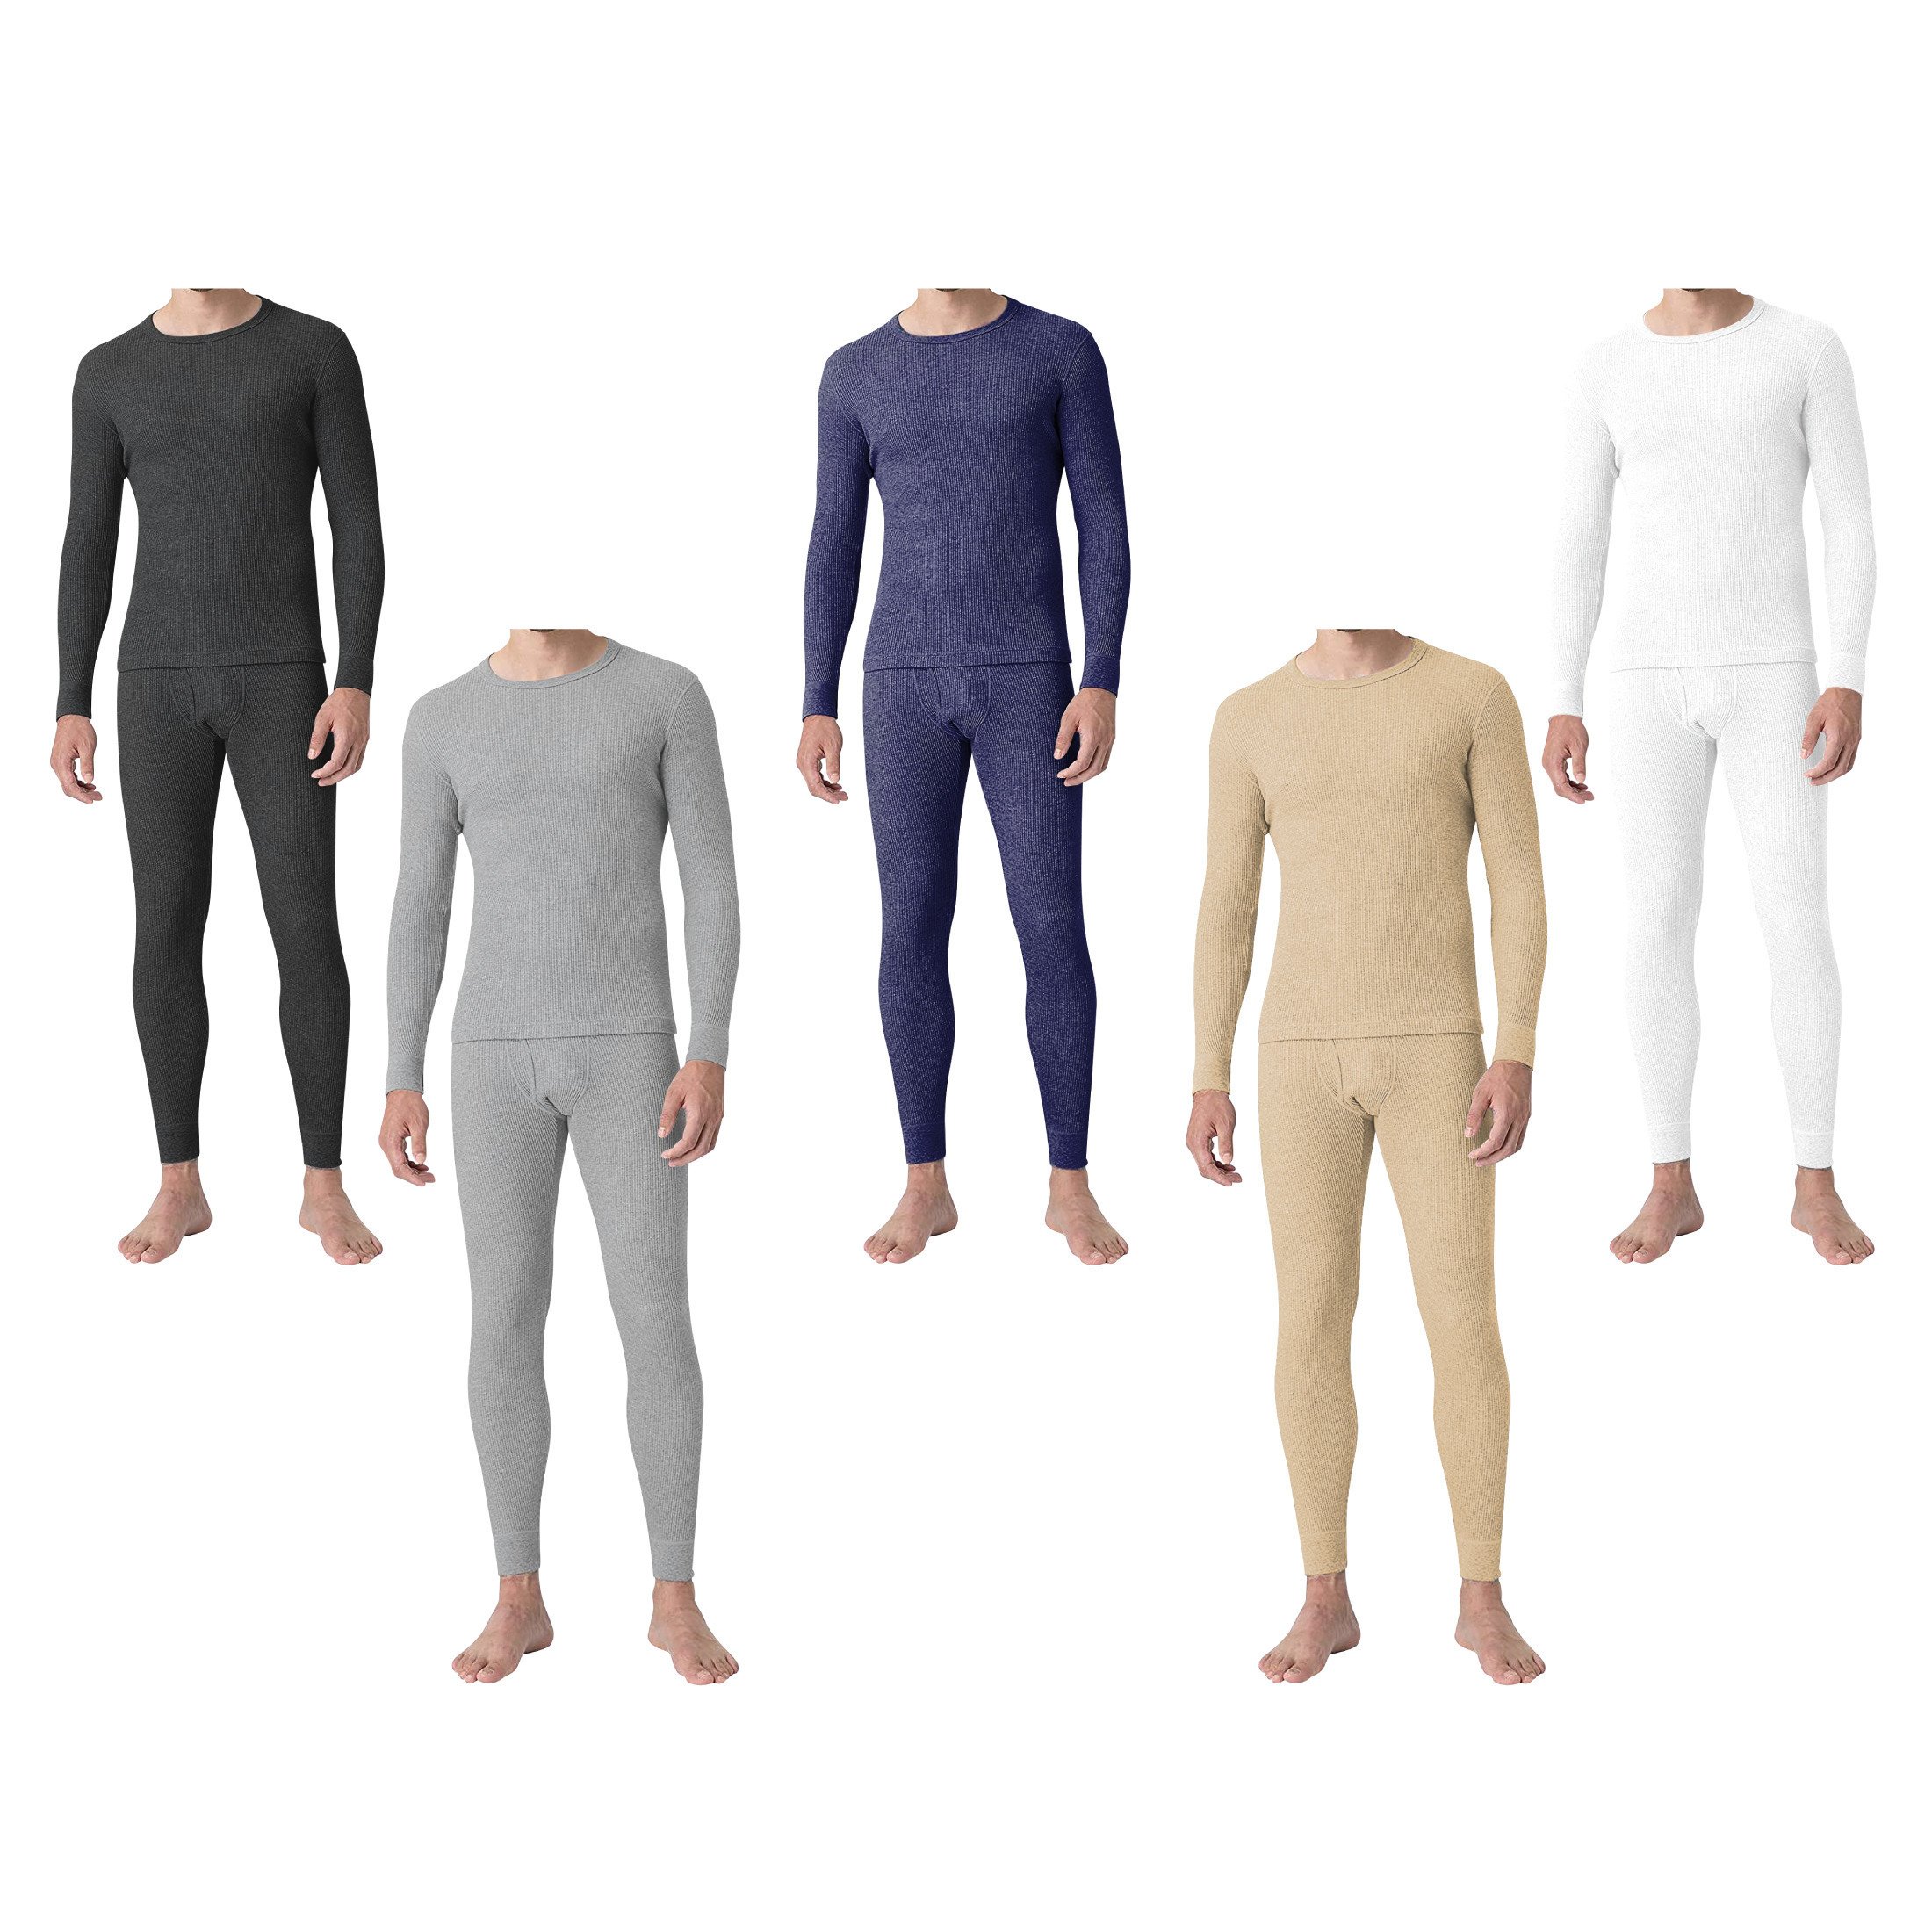 2-Sets: Men's Super Soft Cotton Waffle Knit Winter Thermal Underwear Set - White & Navy, Medium